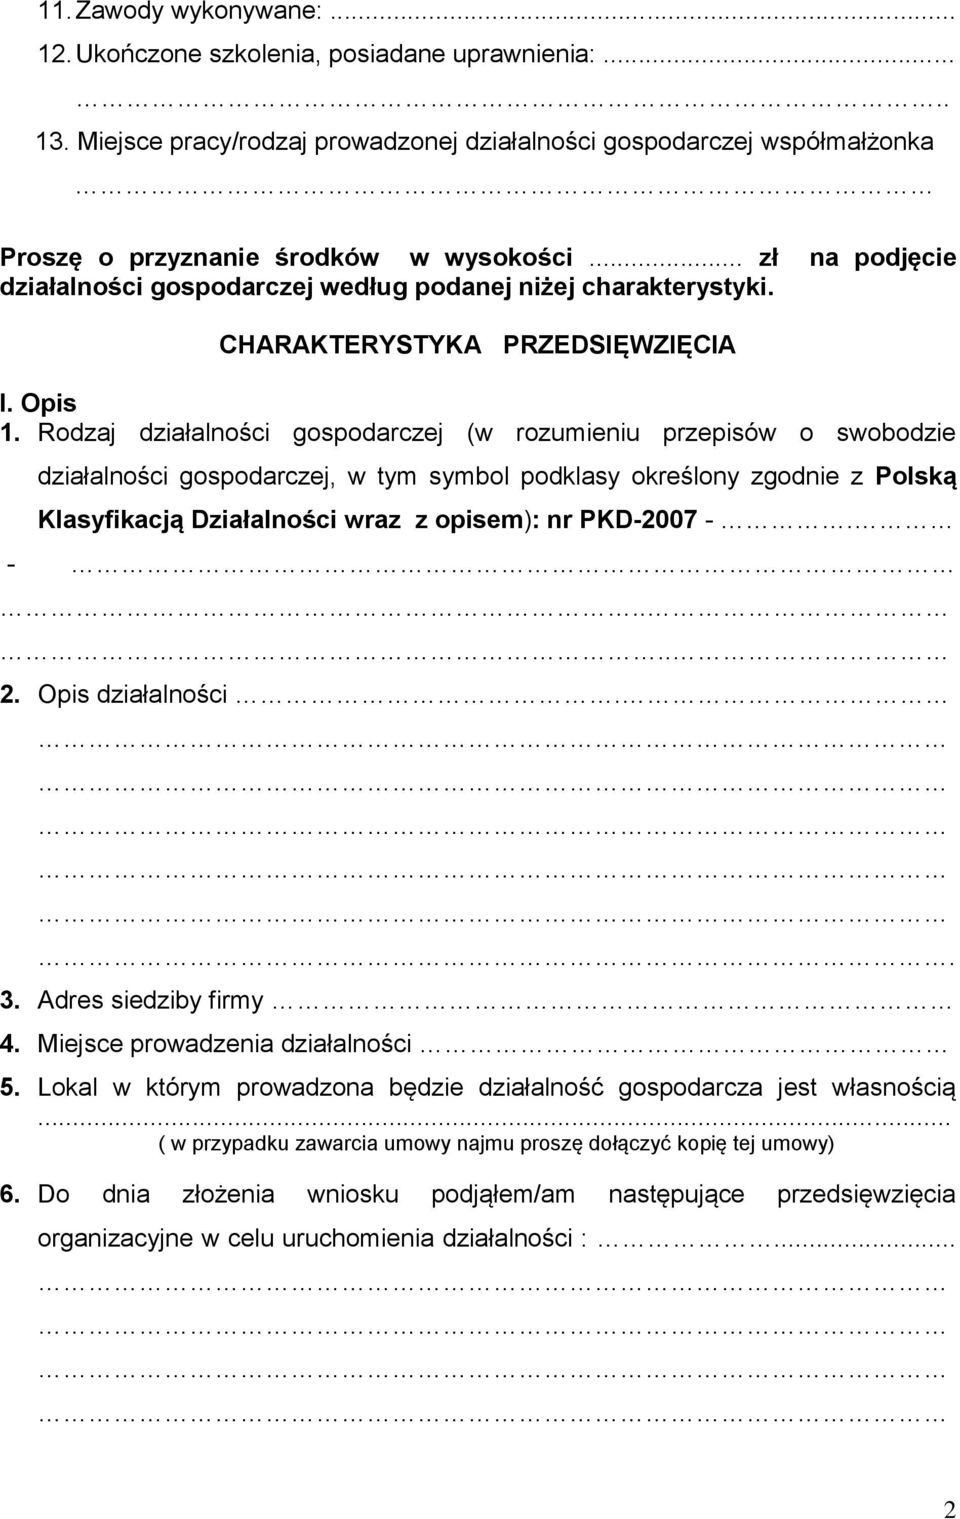 Rodzaj działalności gospodarczej (w rozumieniu przepisów o swobodzie działalności gospodarczej, w tym symbol podklasy określony zgodnie z Polską Klasyfikacją Działalności wraz z opisem): nr PKD-2007